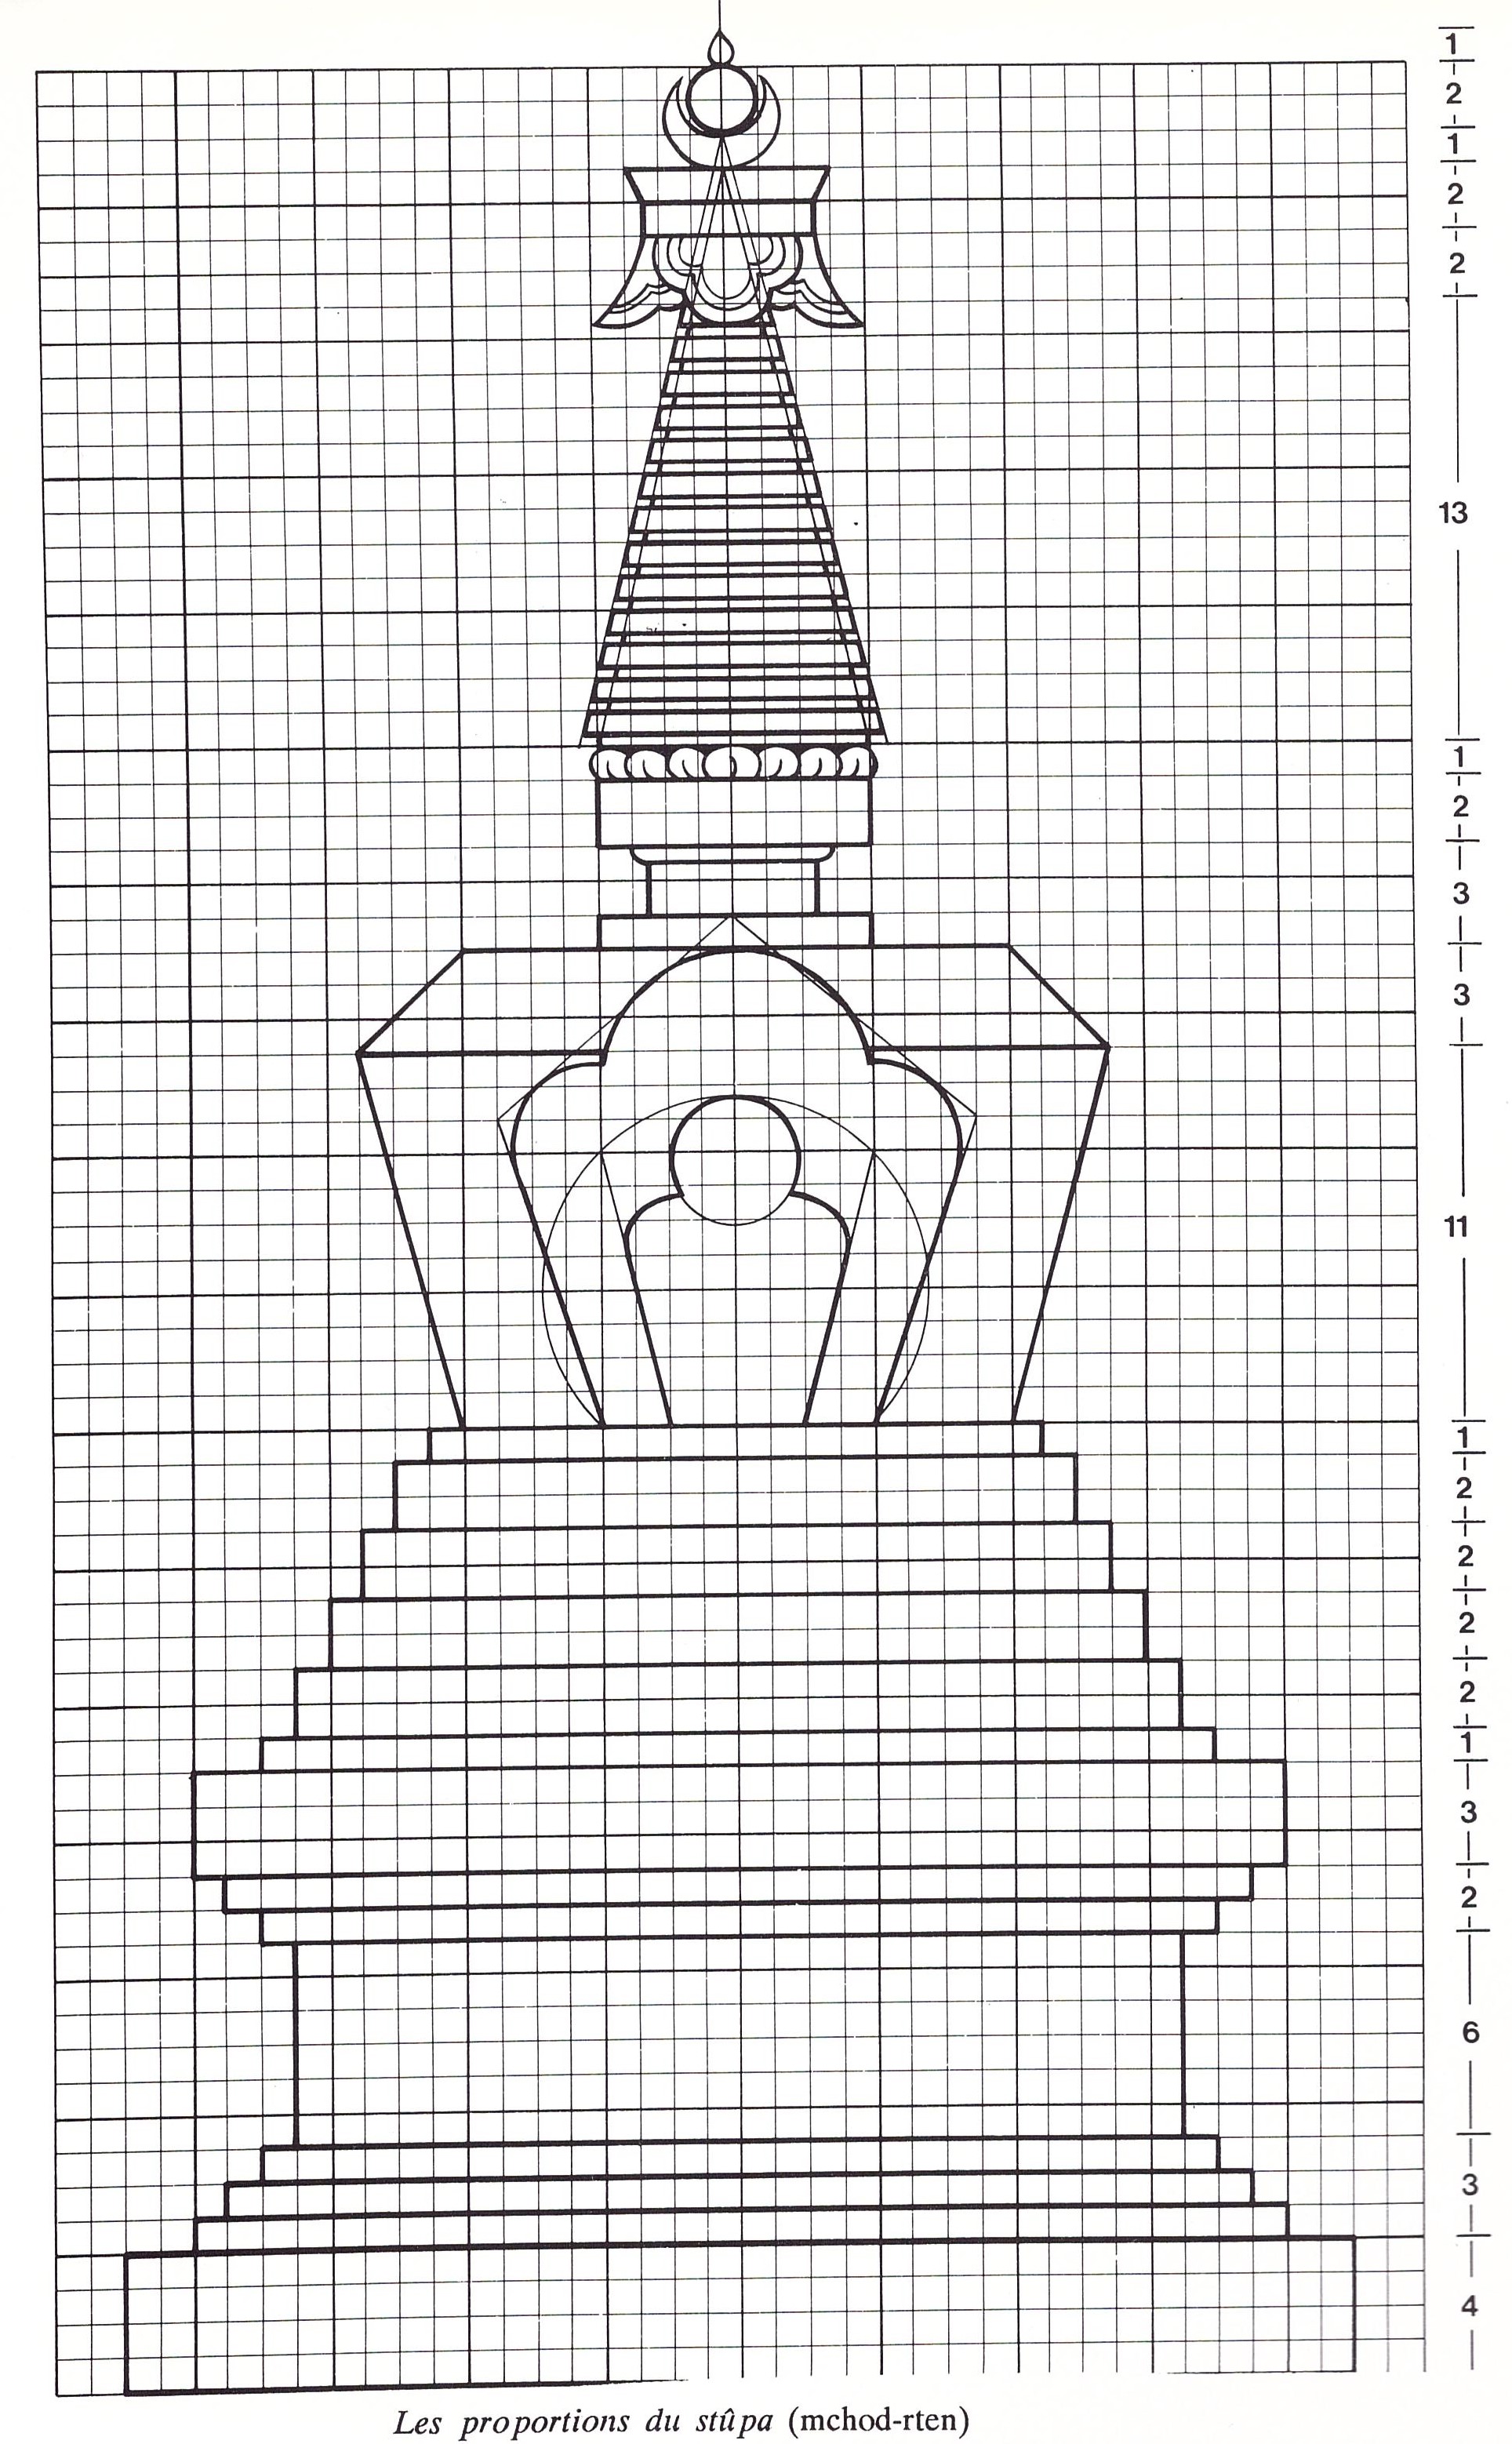 Proportions stupa.jpeg